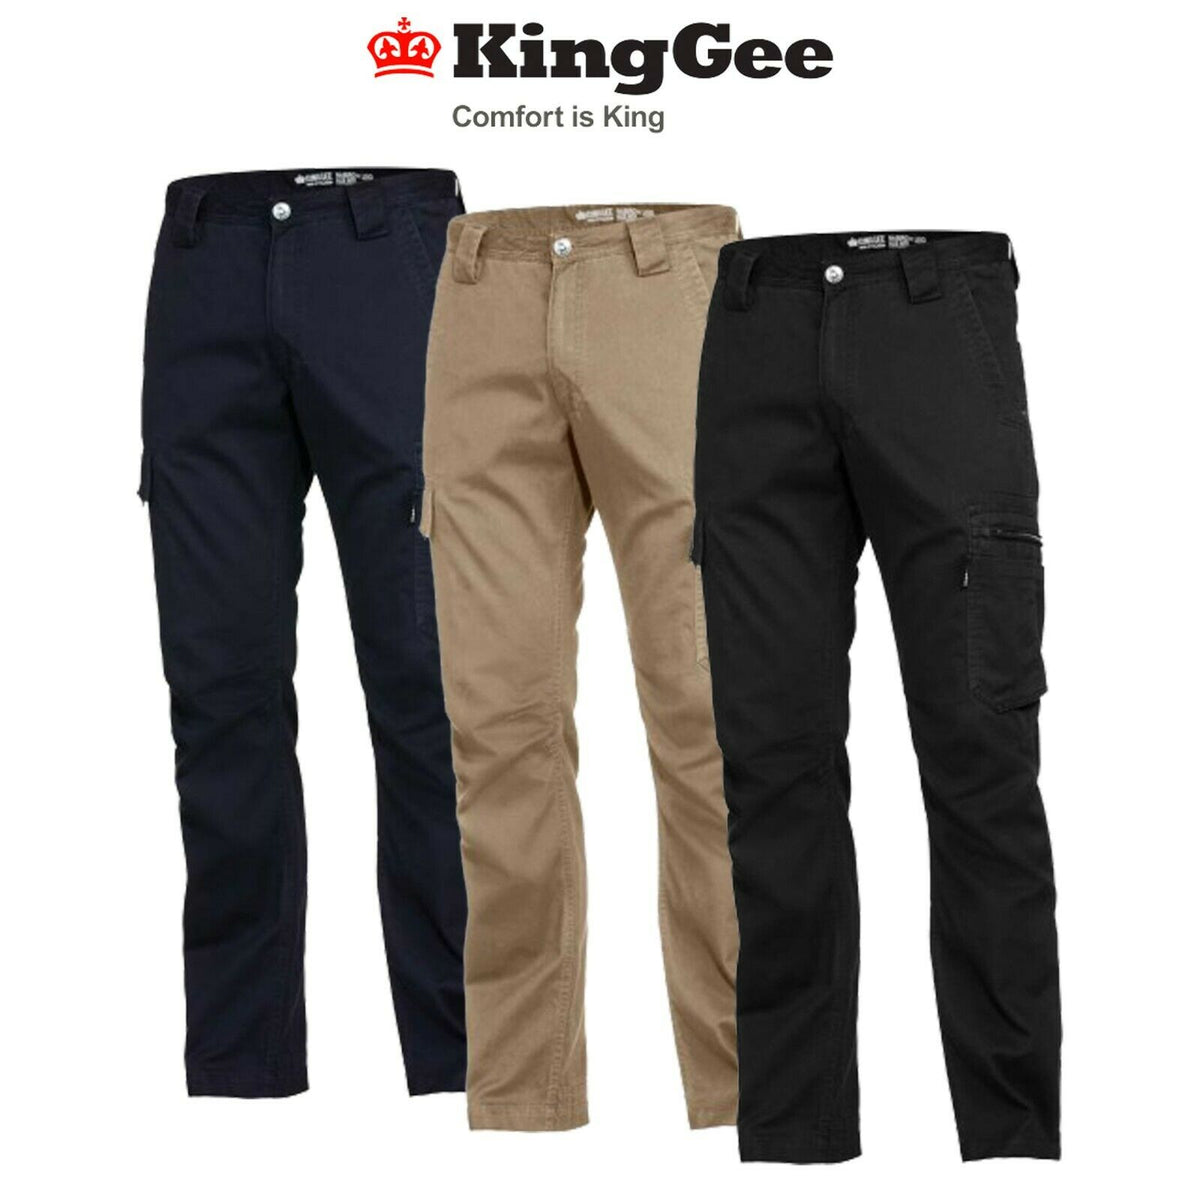 Mens KingGee Summer Tradie Pants Slim Narrow Fit Work King Gee Cargo Work K13290